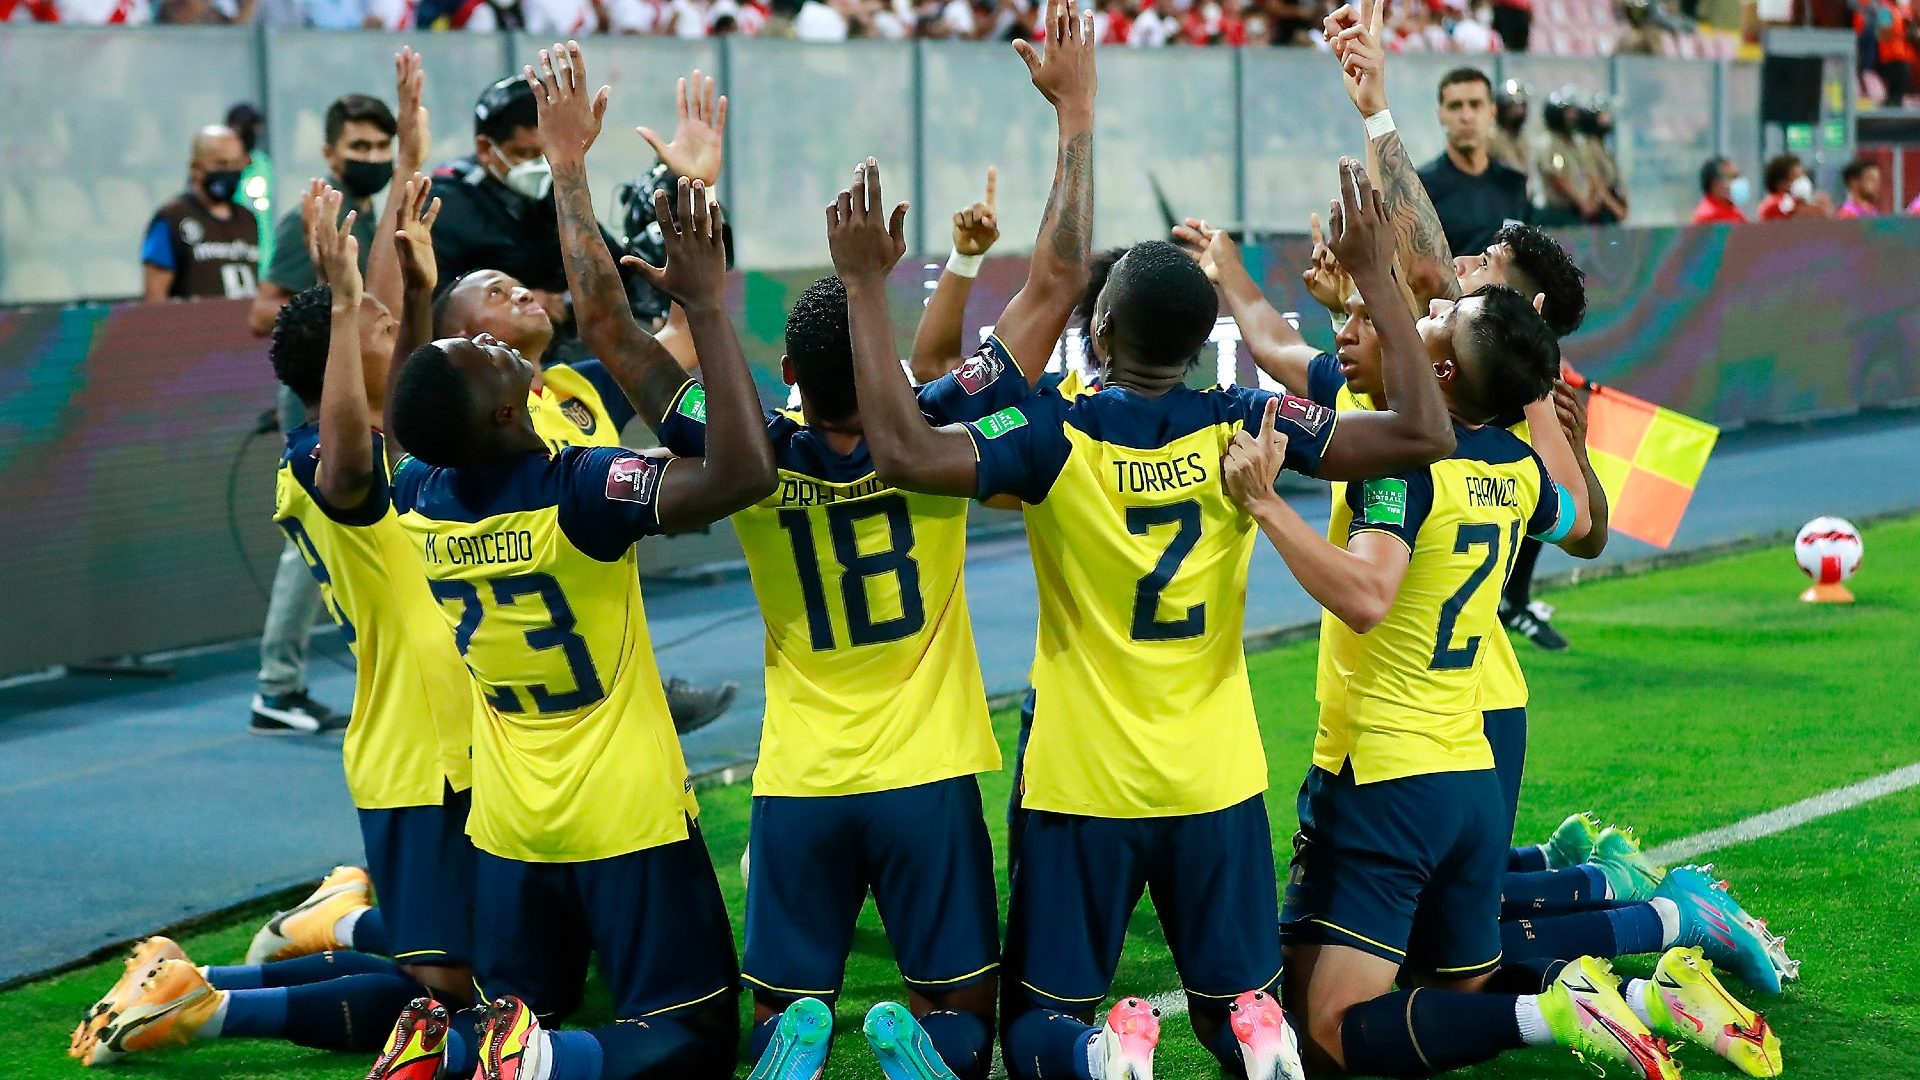 ¿Cómo le ha ido a Ecuador en los mundiales de fútbol? ¿Cuánto es lo más